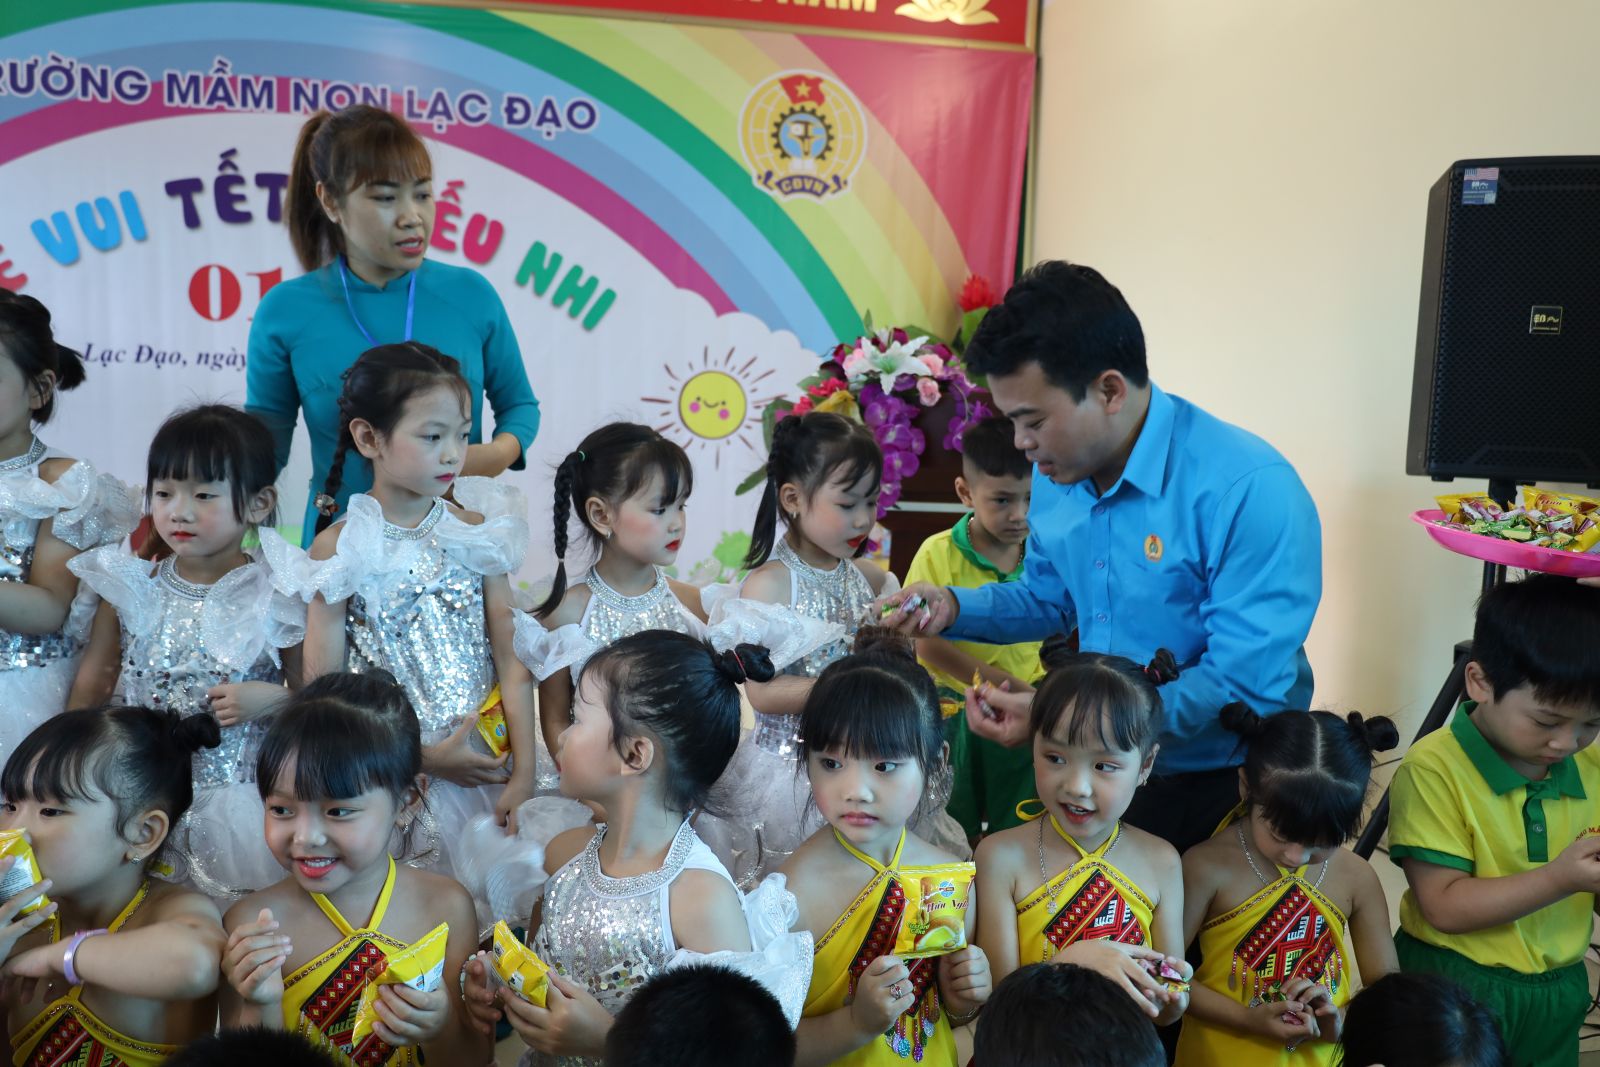 Lãnh đạo Liên đoàn Lao động tỉnh thăm và tặng quà cho trẻ em, con CNLĐ nhân dịp Tết Thiếu nhi 1.6